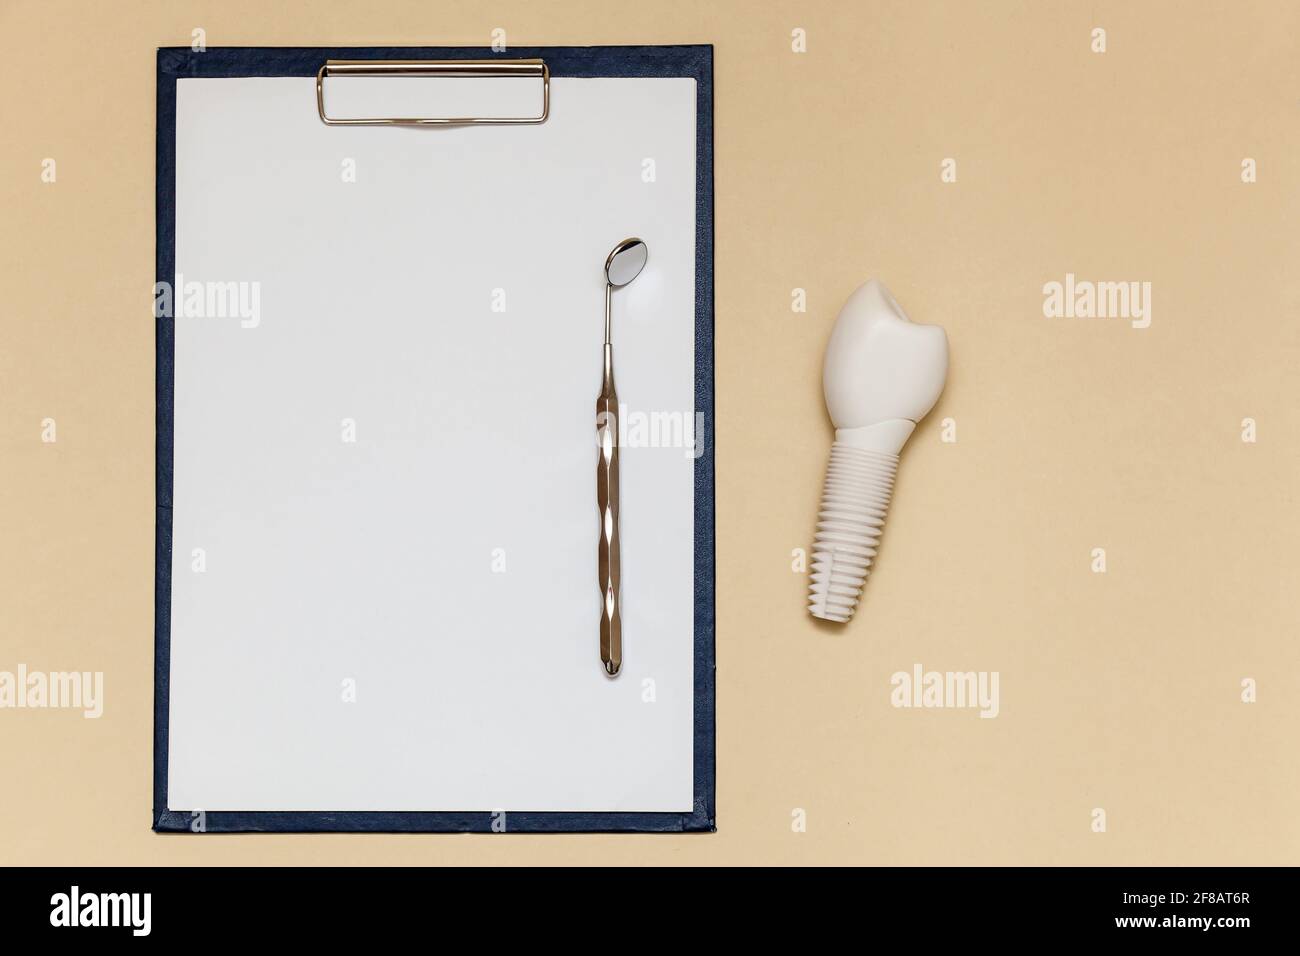 Impianto dentale e piegatrice con clip per fogli di carta A4 su sfondo beige. Modello di impianto dentale del dente artificiale. Concetto di odontoiatria e medicina Foto Stock